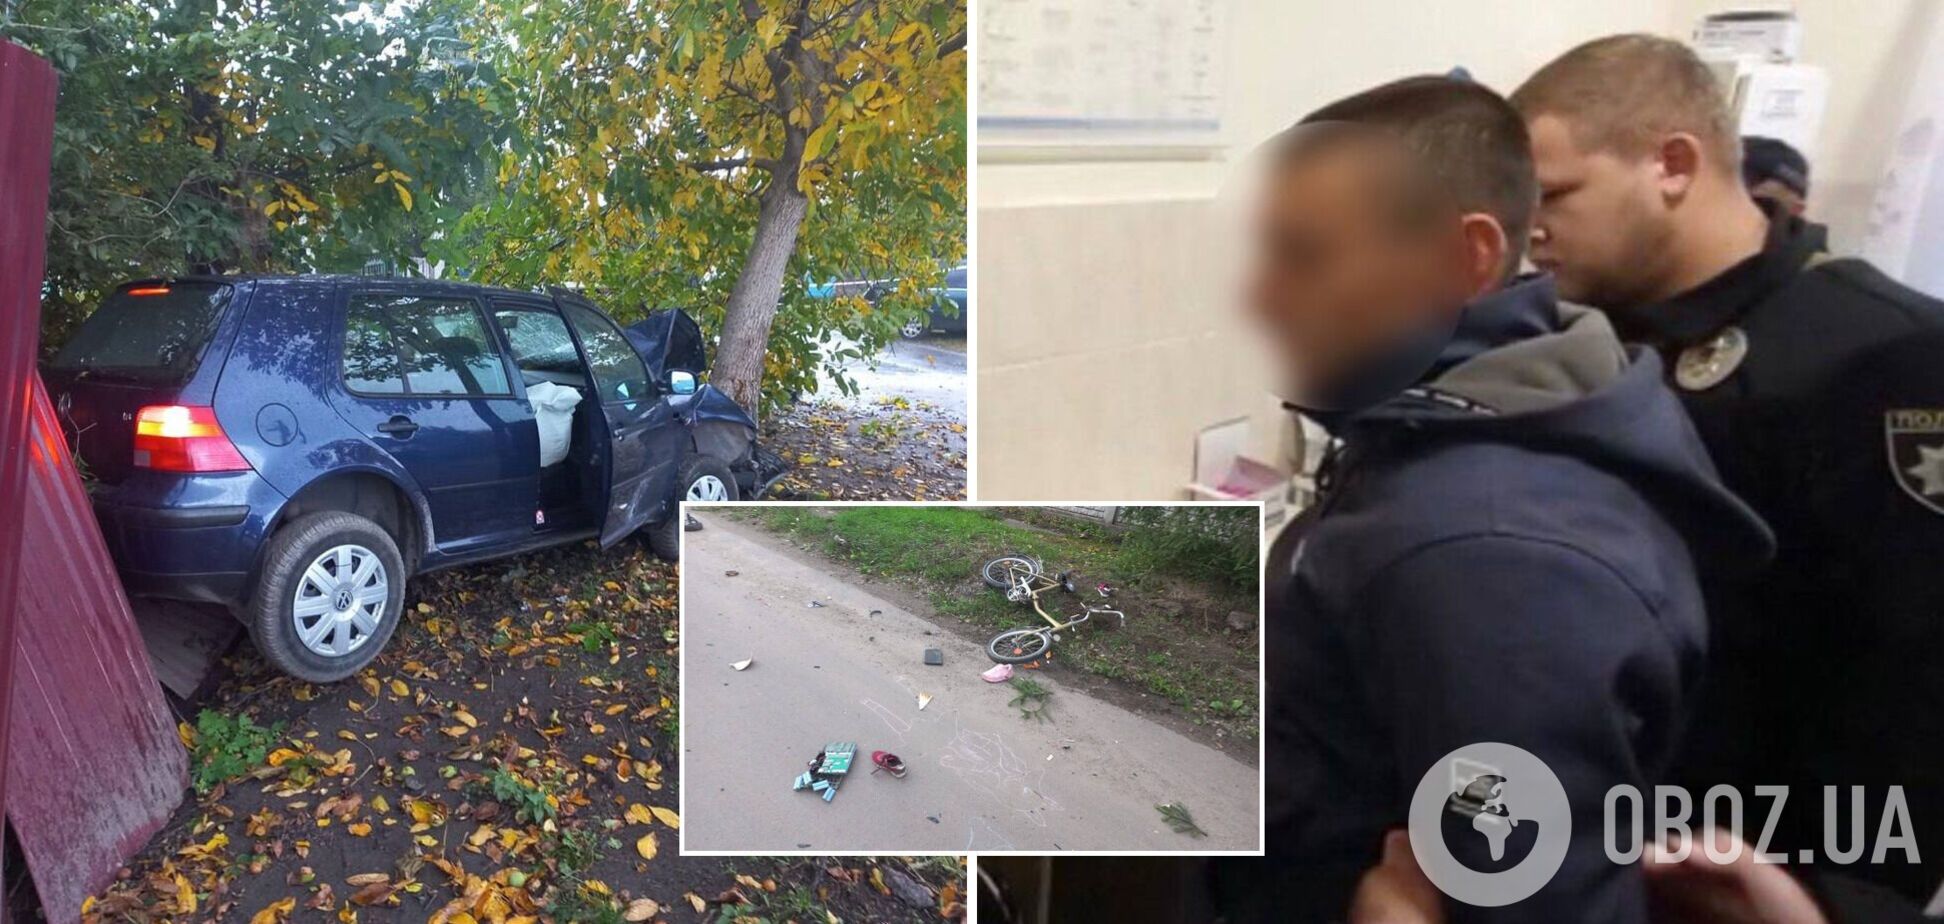 Водитель, сбивший двух девочек в Киевской области, был под действием наркотиков. Фото